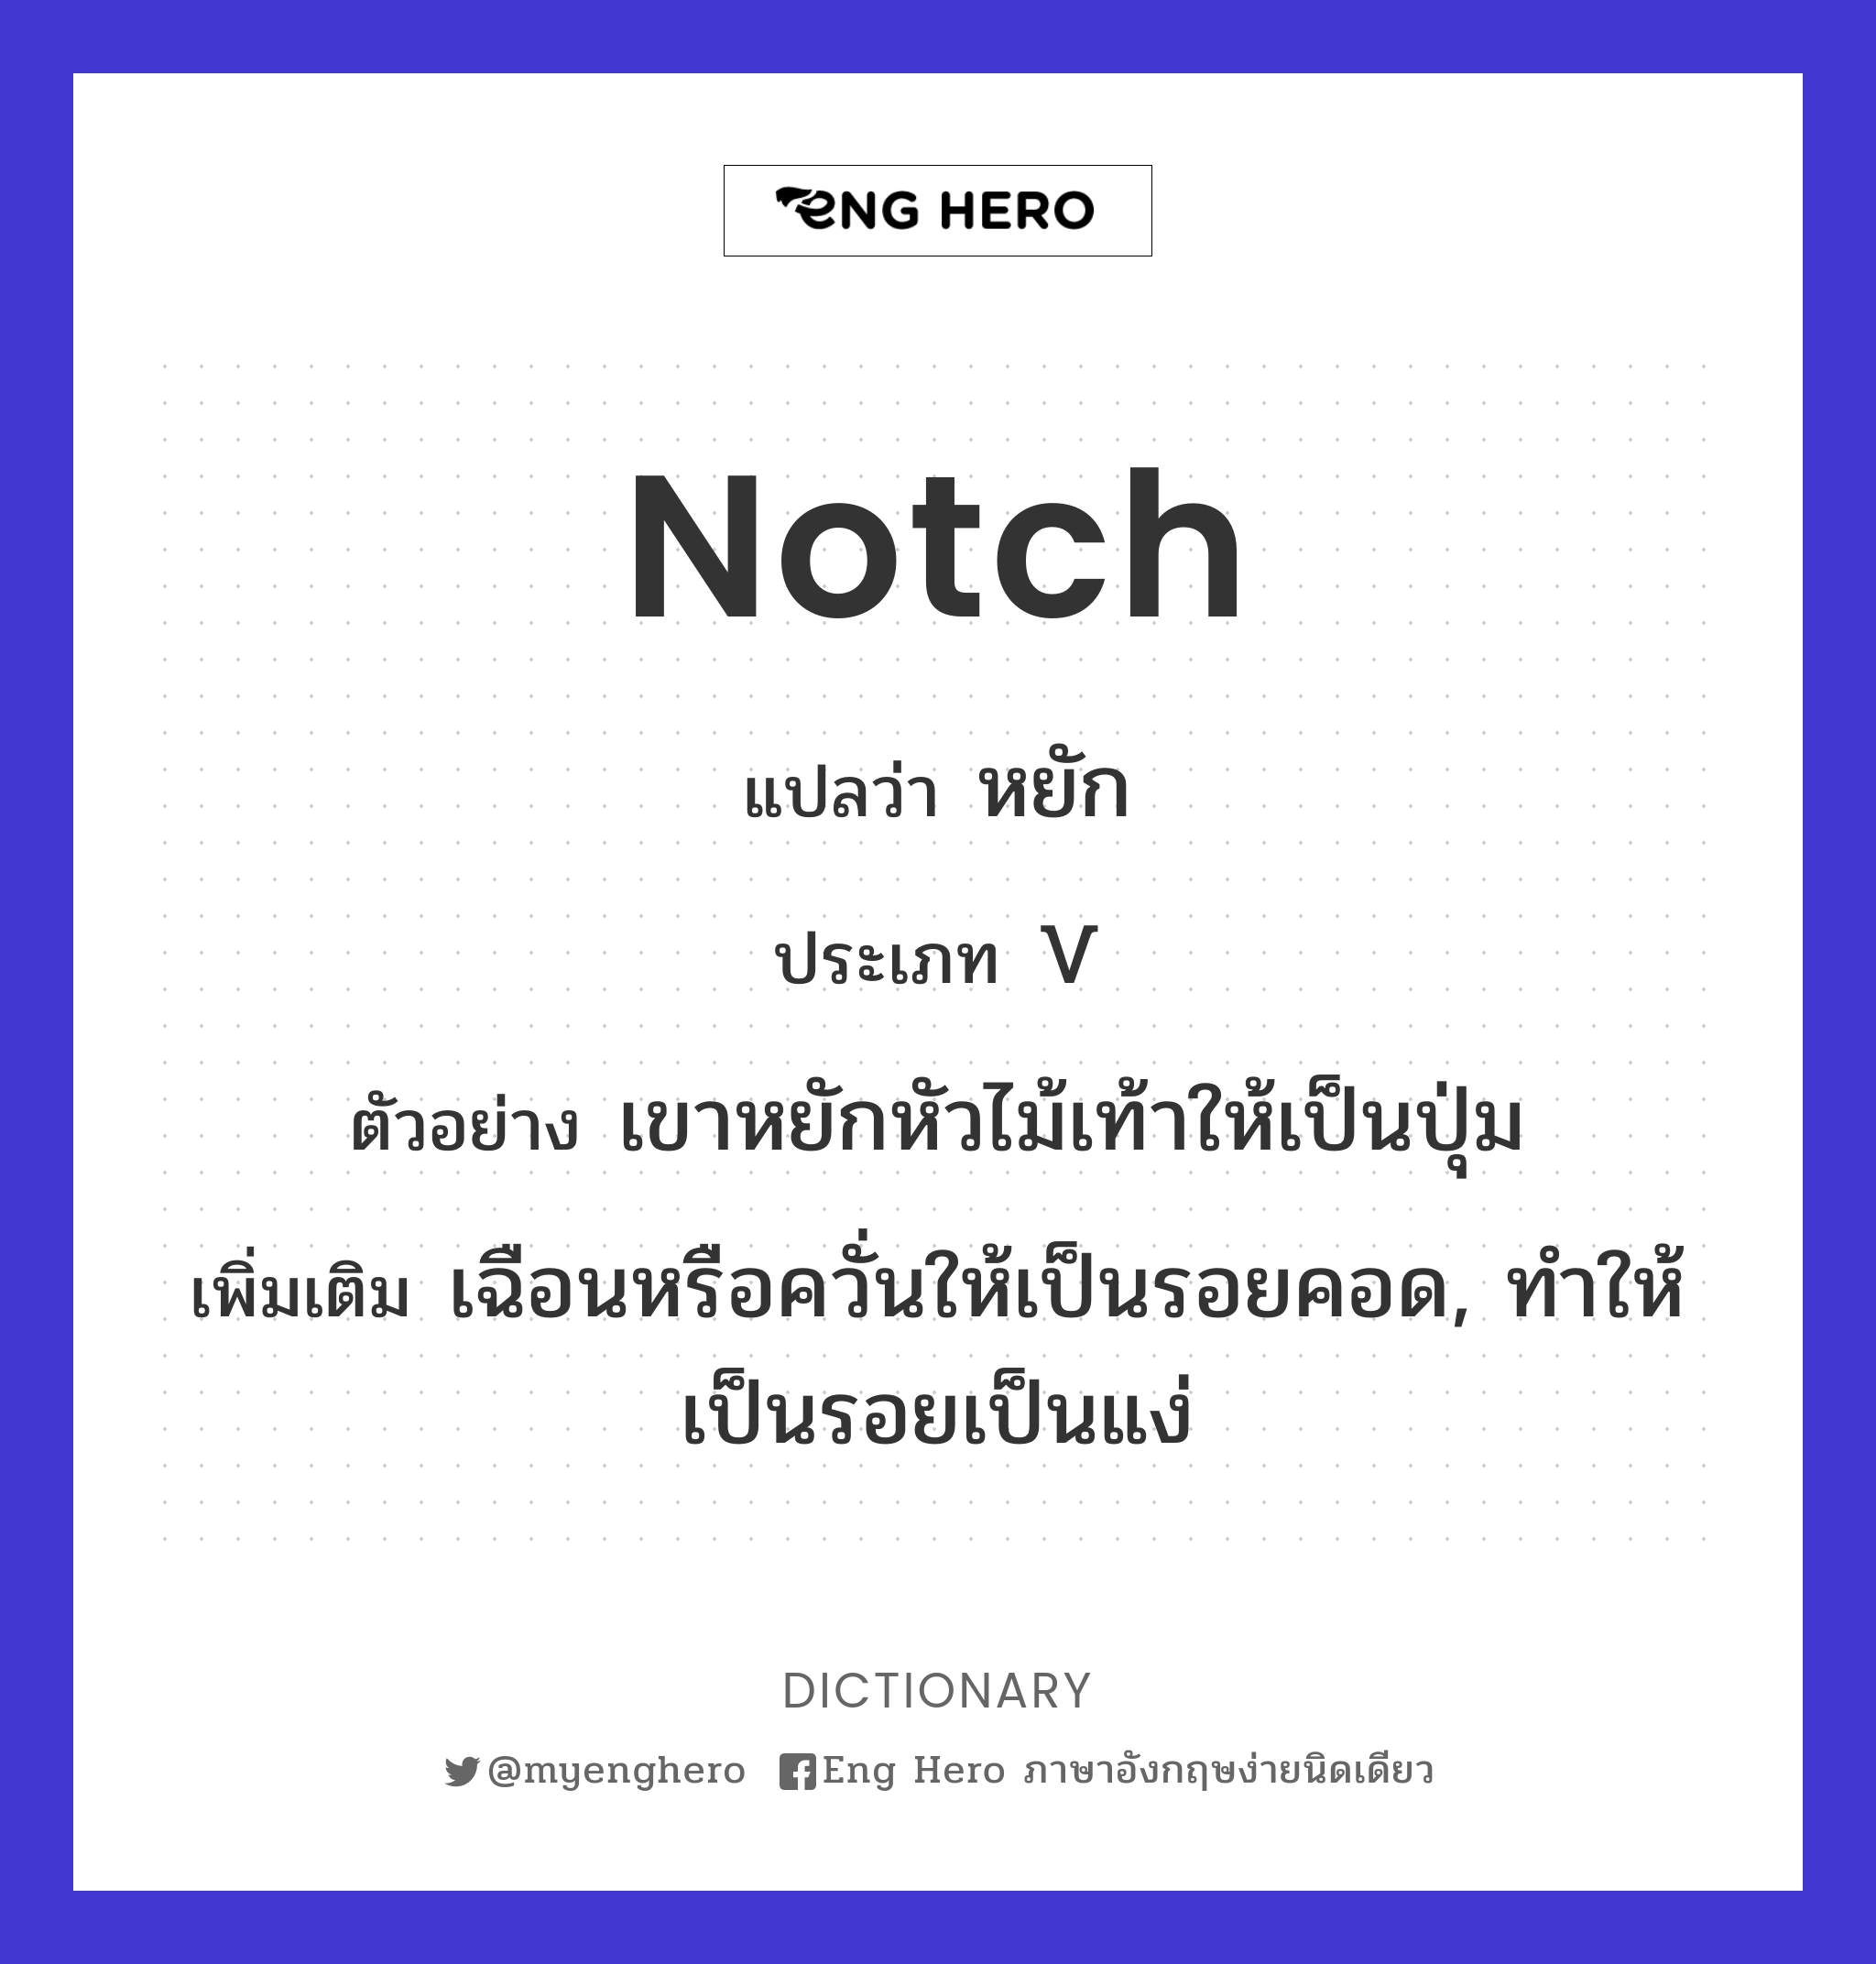 notch